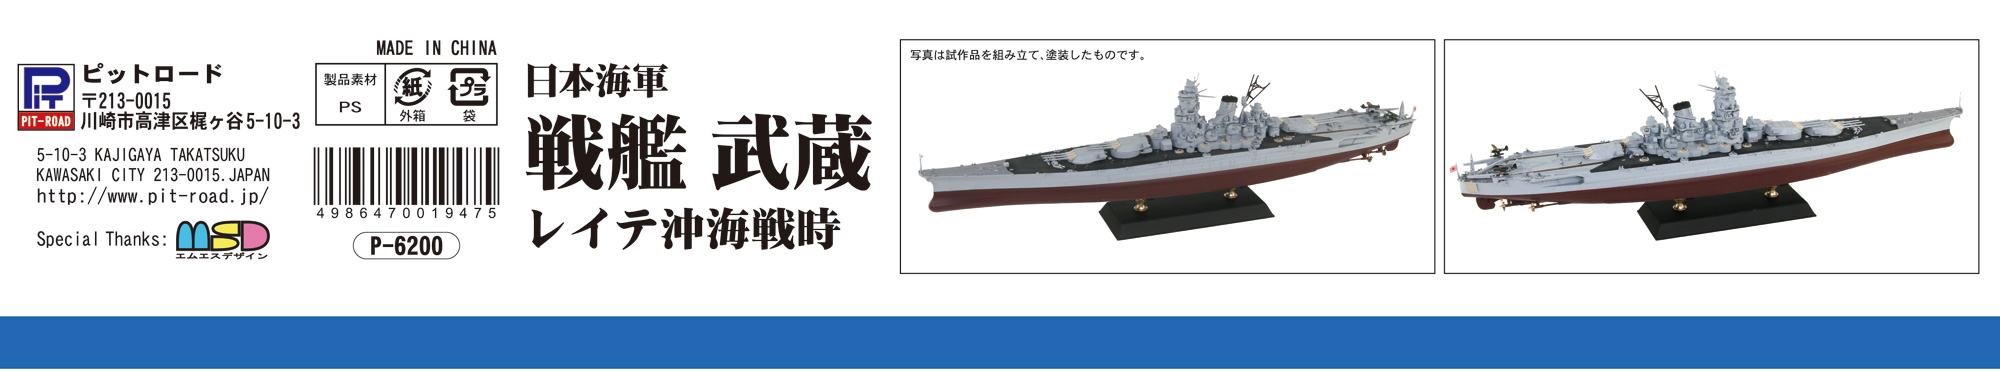 1/700 日本海軍 戦艦 武蔵 レイテ沖海戦時